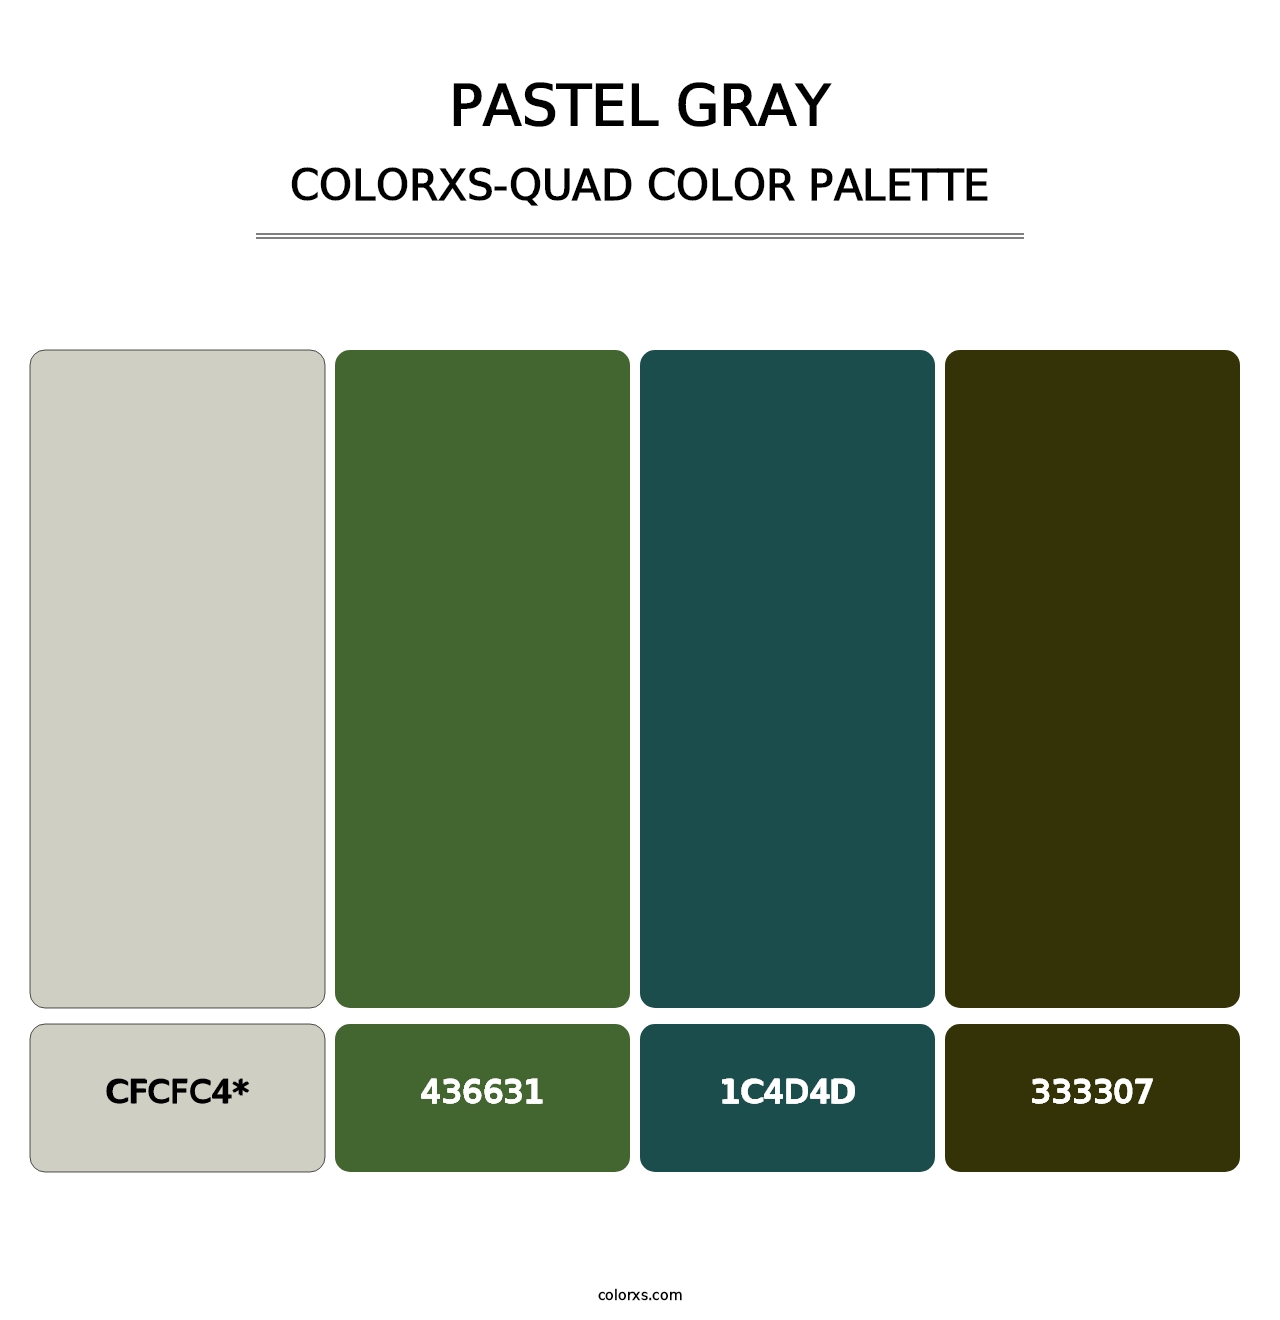 Pastel Gray - Colorxs Quad Palette